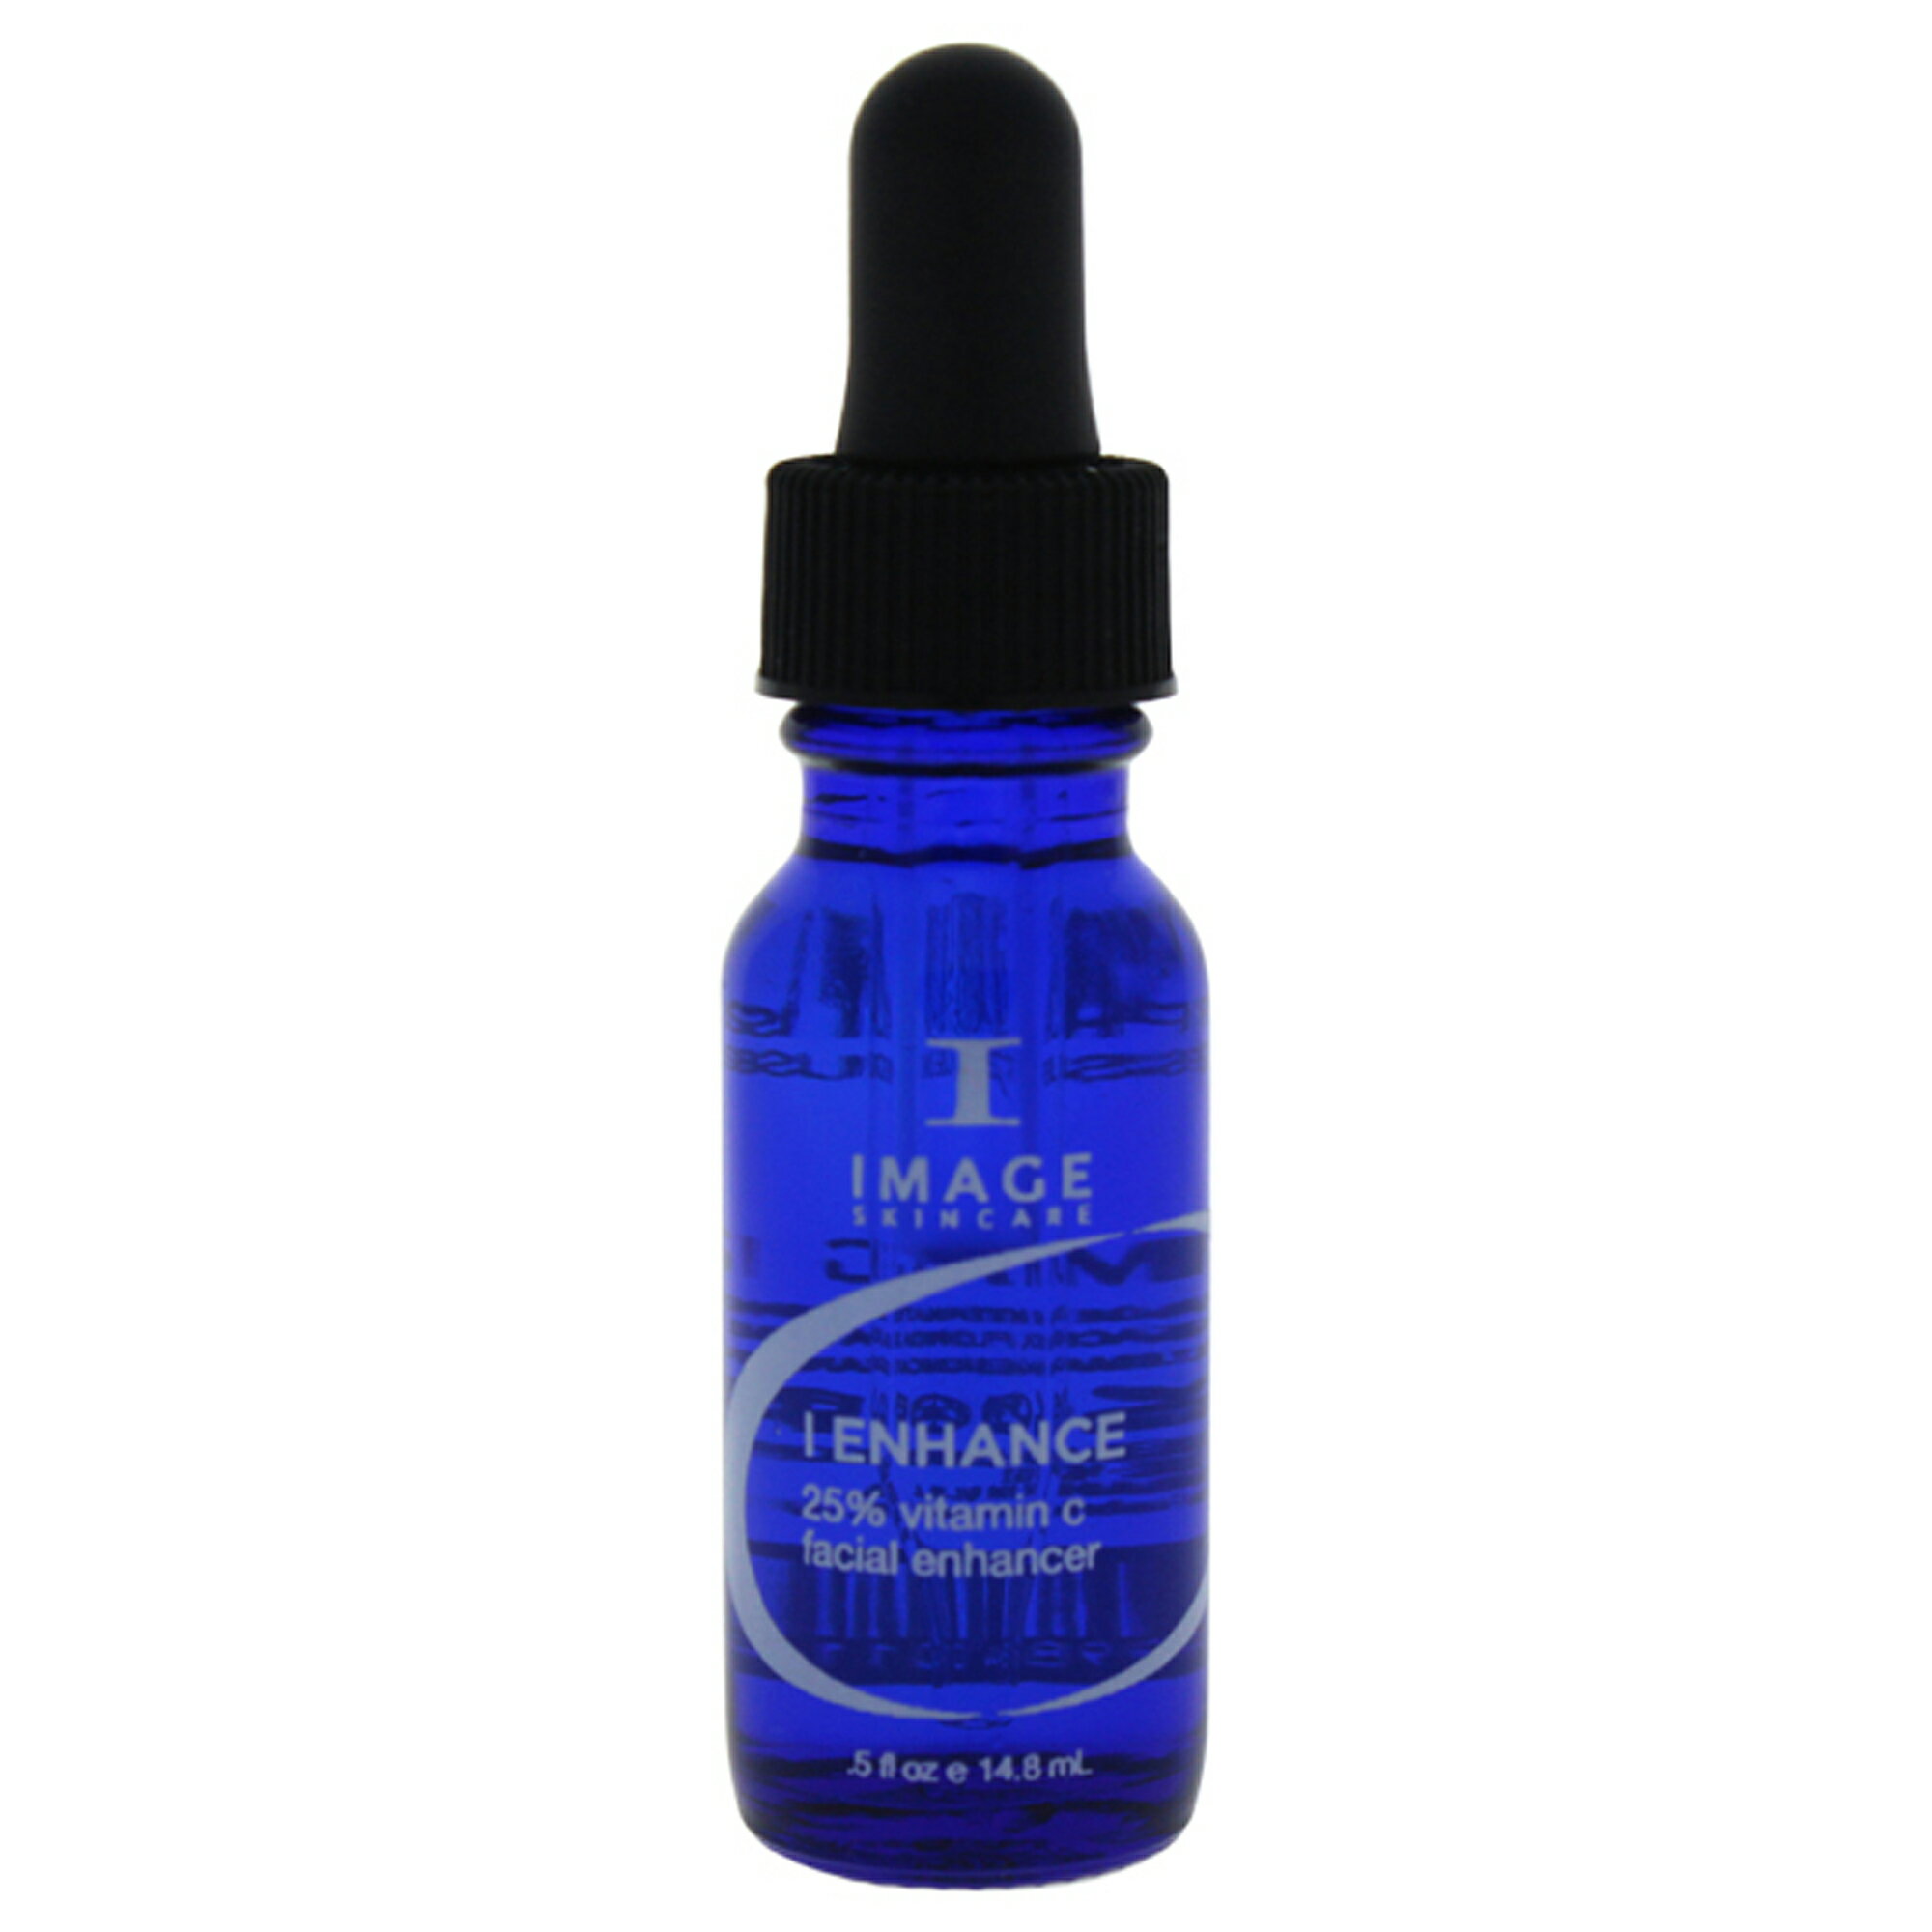 【正規品】【送料無料】イメージImageI-Enhance 25% Vitamin C Facial Enhancer (アイ・エンハンス 25% ビタミンCフェイシャルエンハンサー)Treatment0.5oz